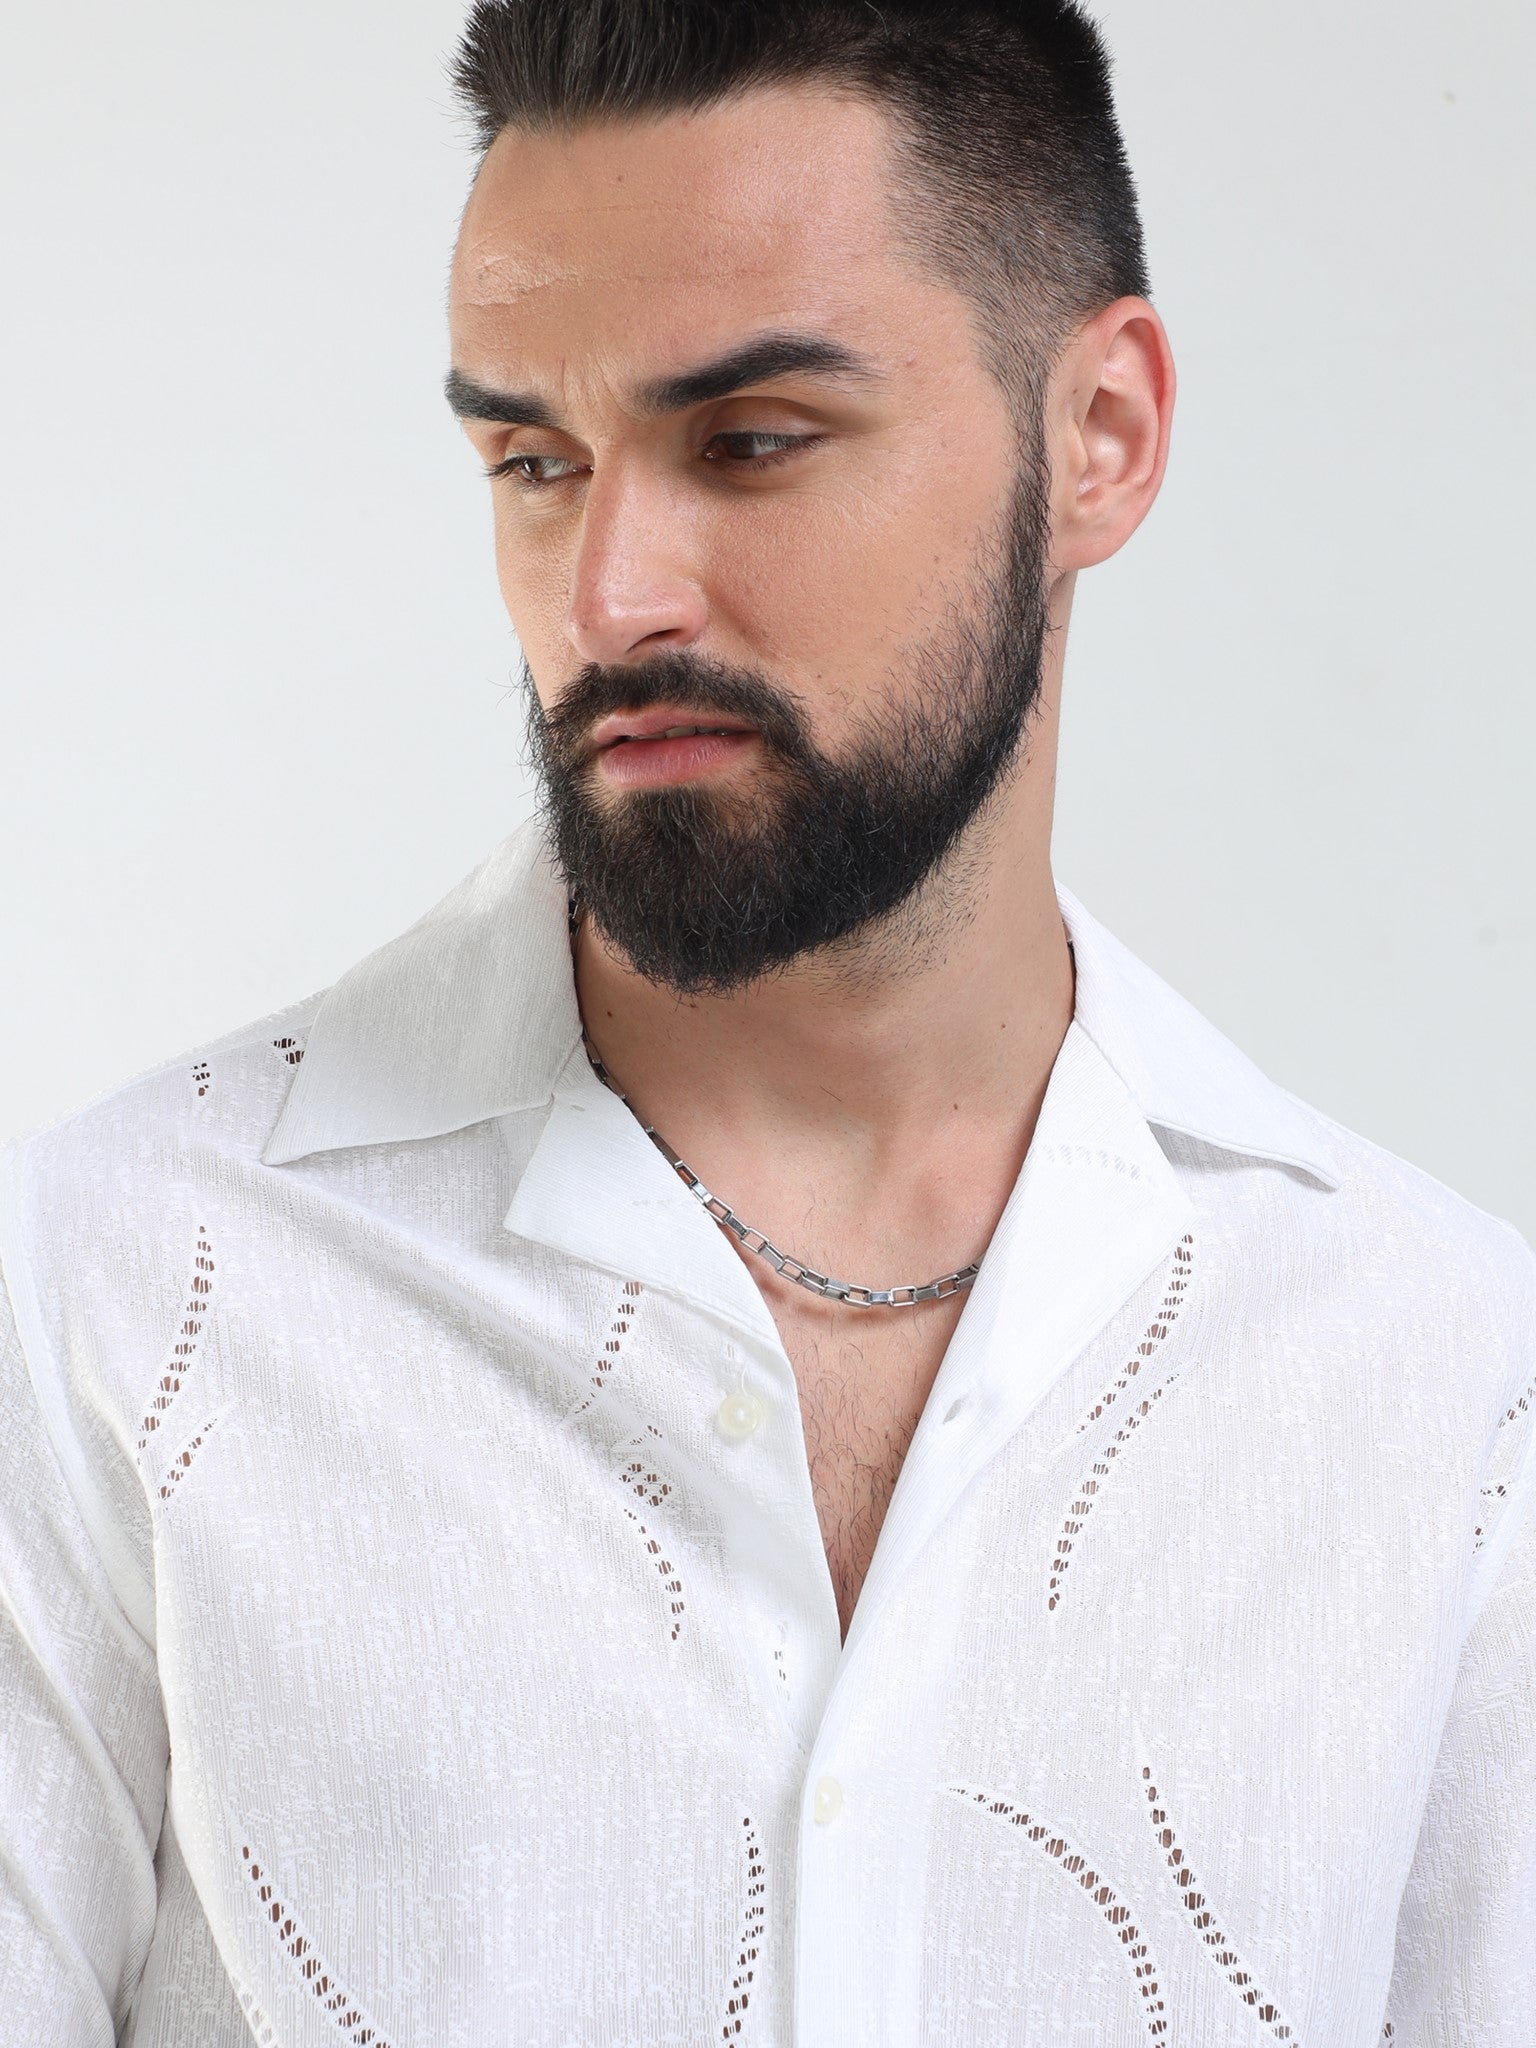 Crescent Crochet White Shirt for Men